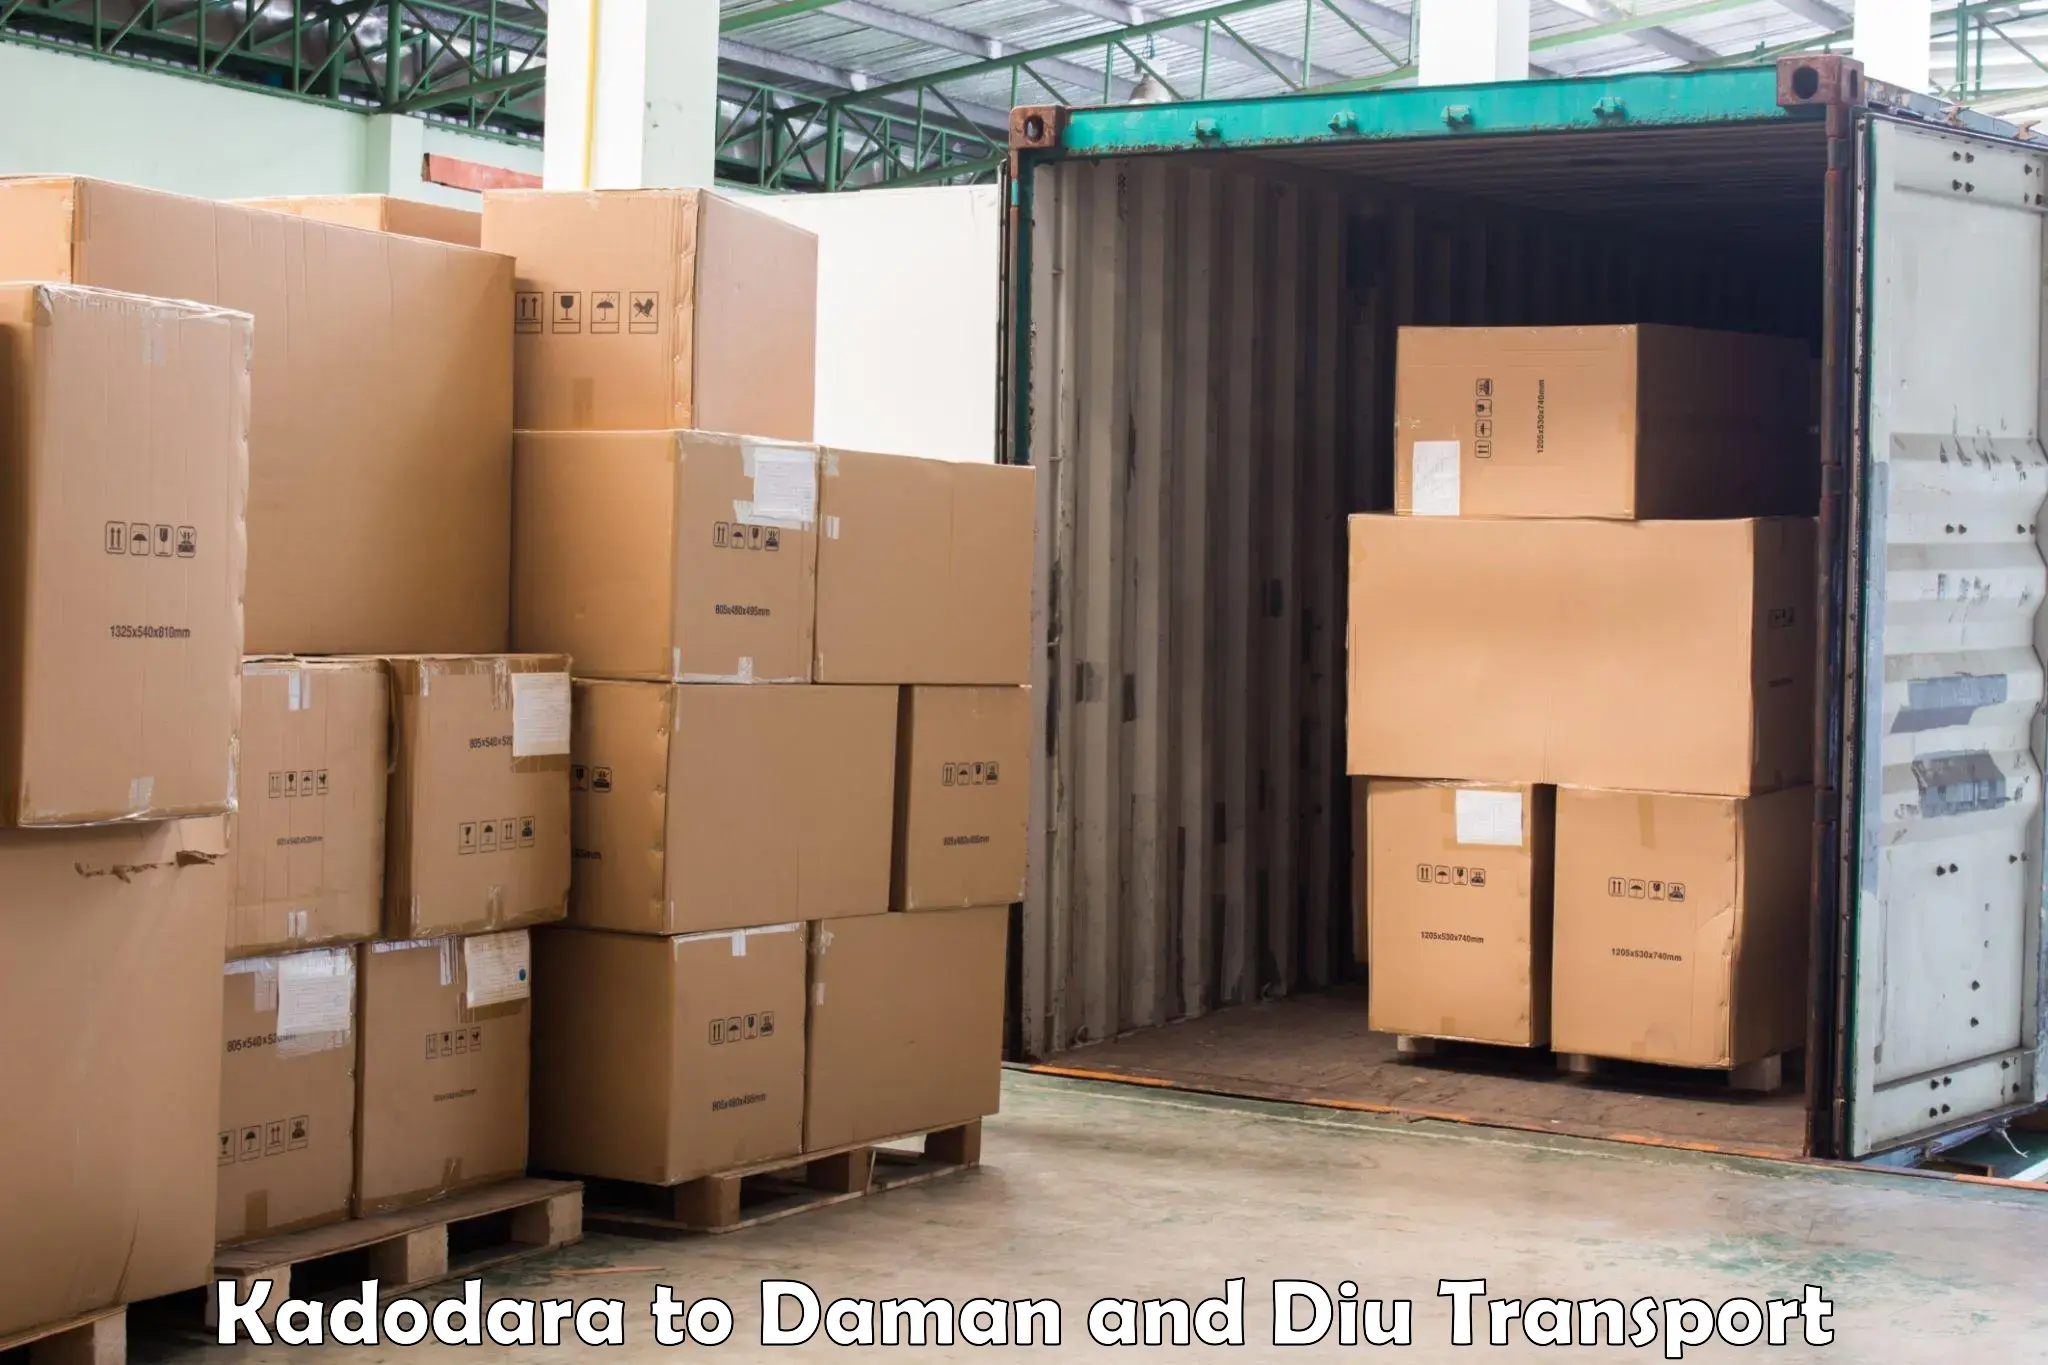 Bike transport service Kadodara to Daman and Diu